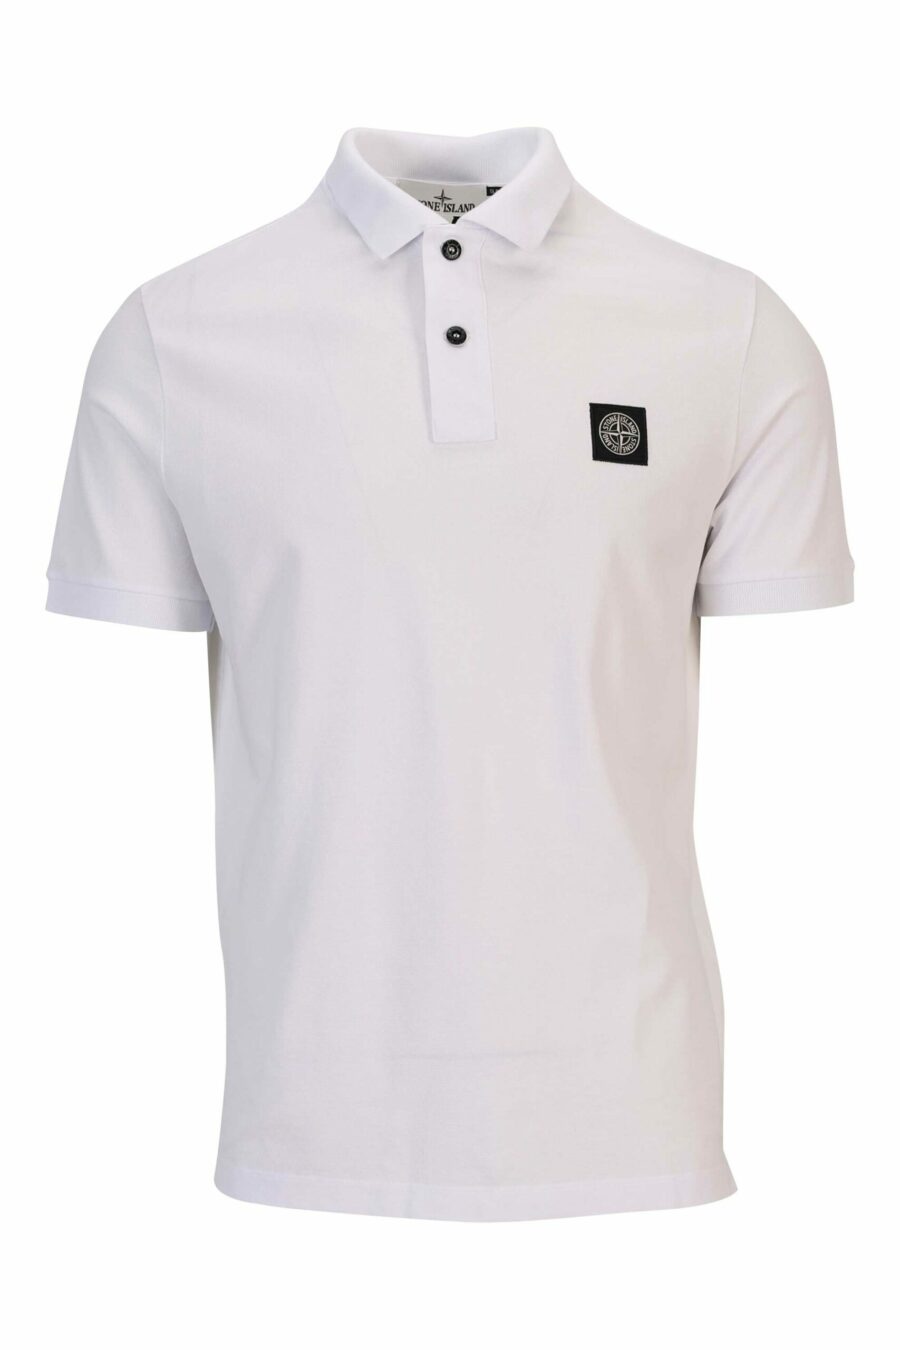 Weißes Slim Fit Poloshirt mit Mini-Logo-Kompass-Aufnäher - 8052572856815 skaliert